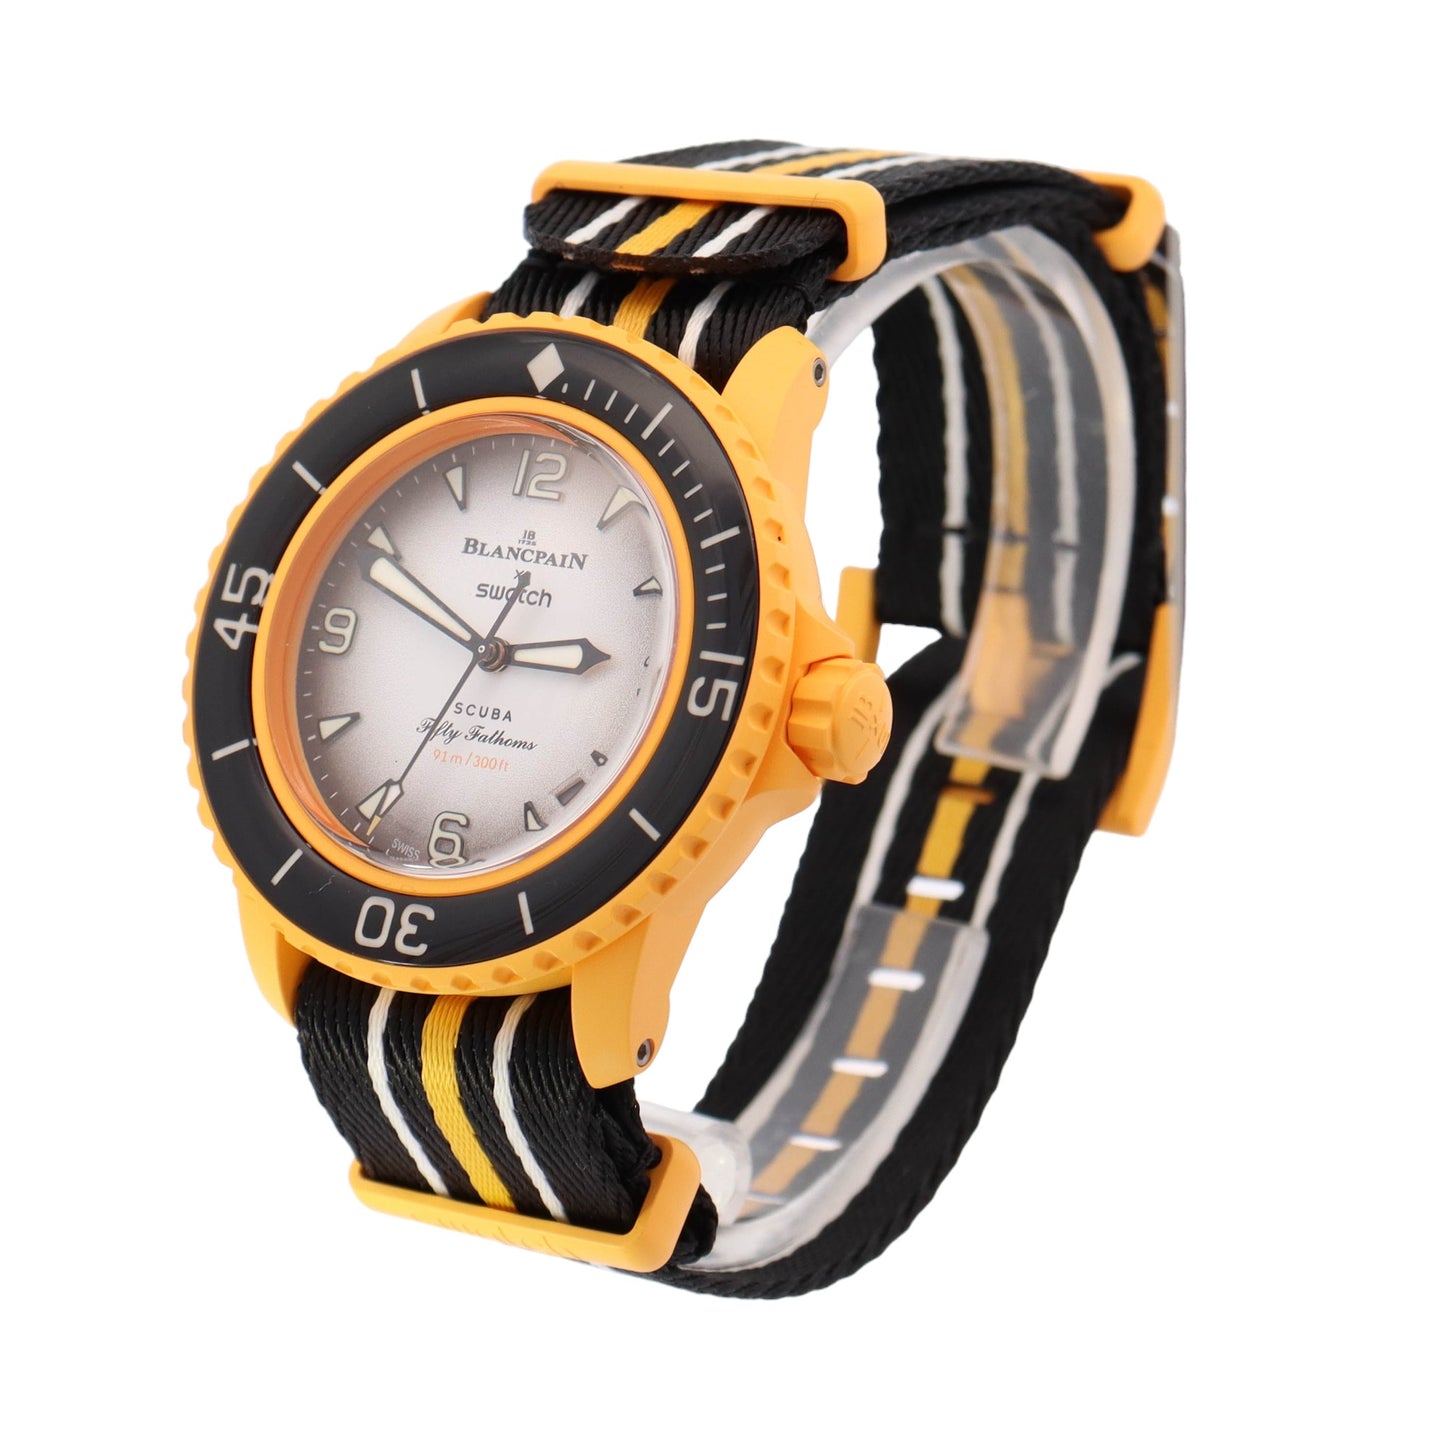 Swatch x Blancpain Yellow Bioceramic 42mm White Arabic & Stick Dial Watch - Happy Jewelers Fine Jewelry Lifetime Warranty